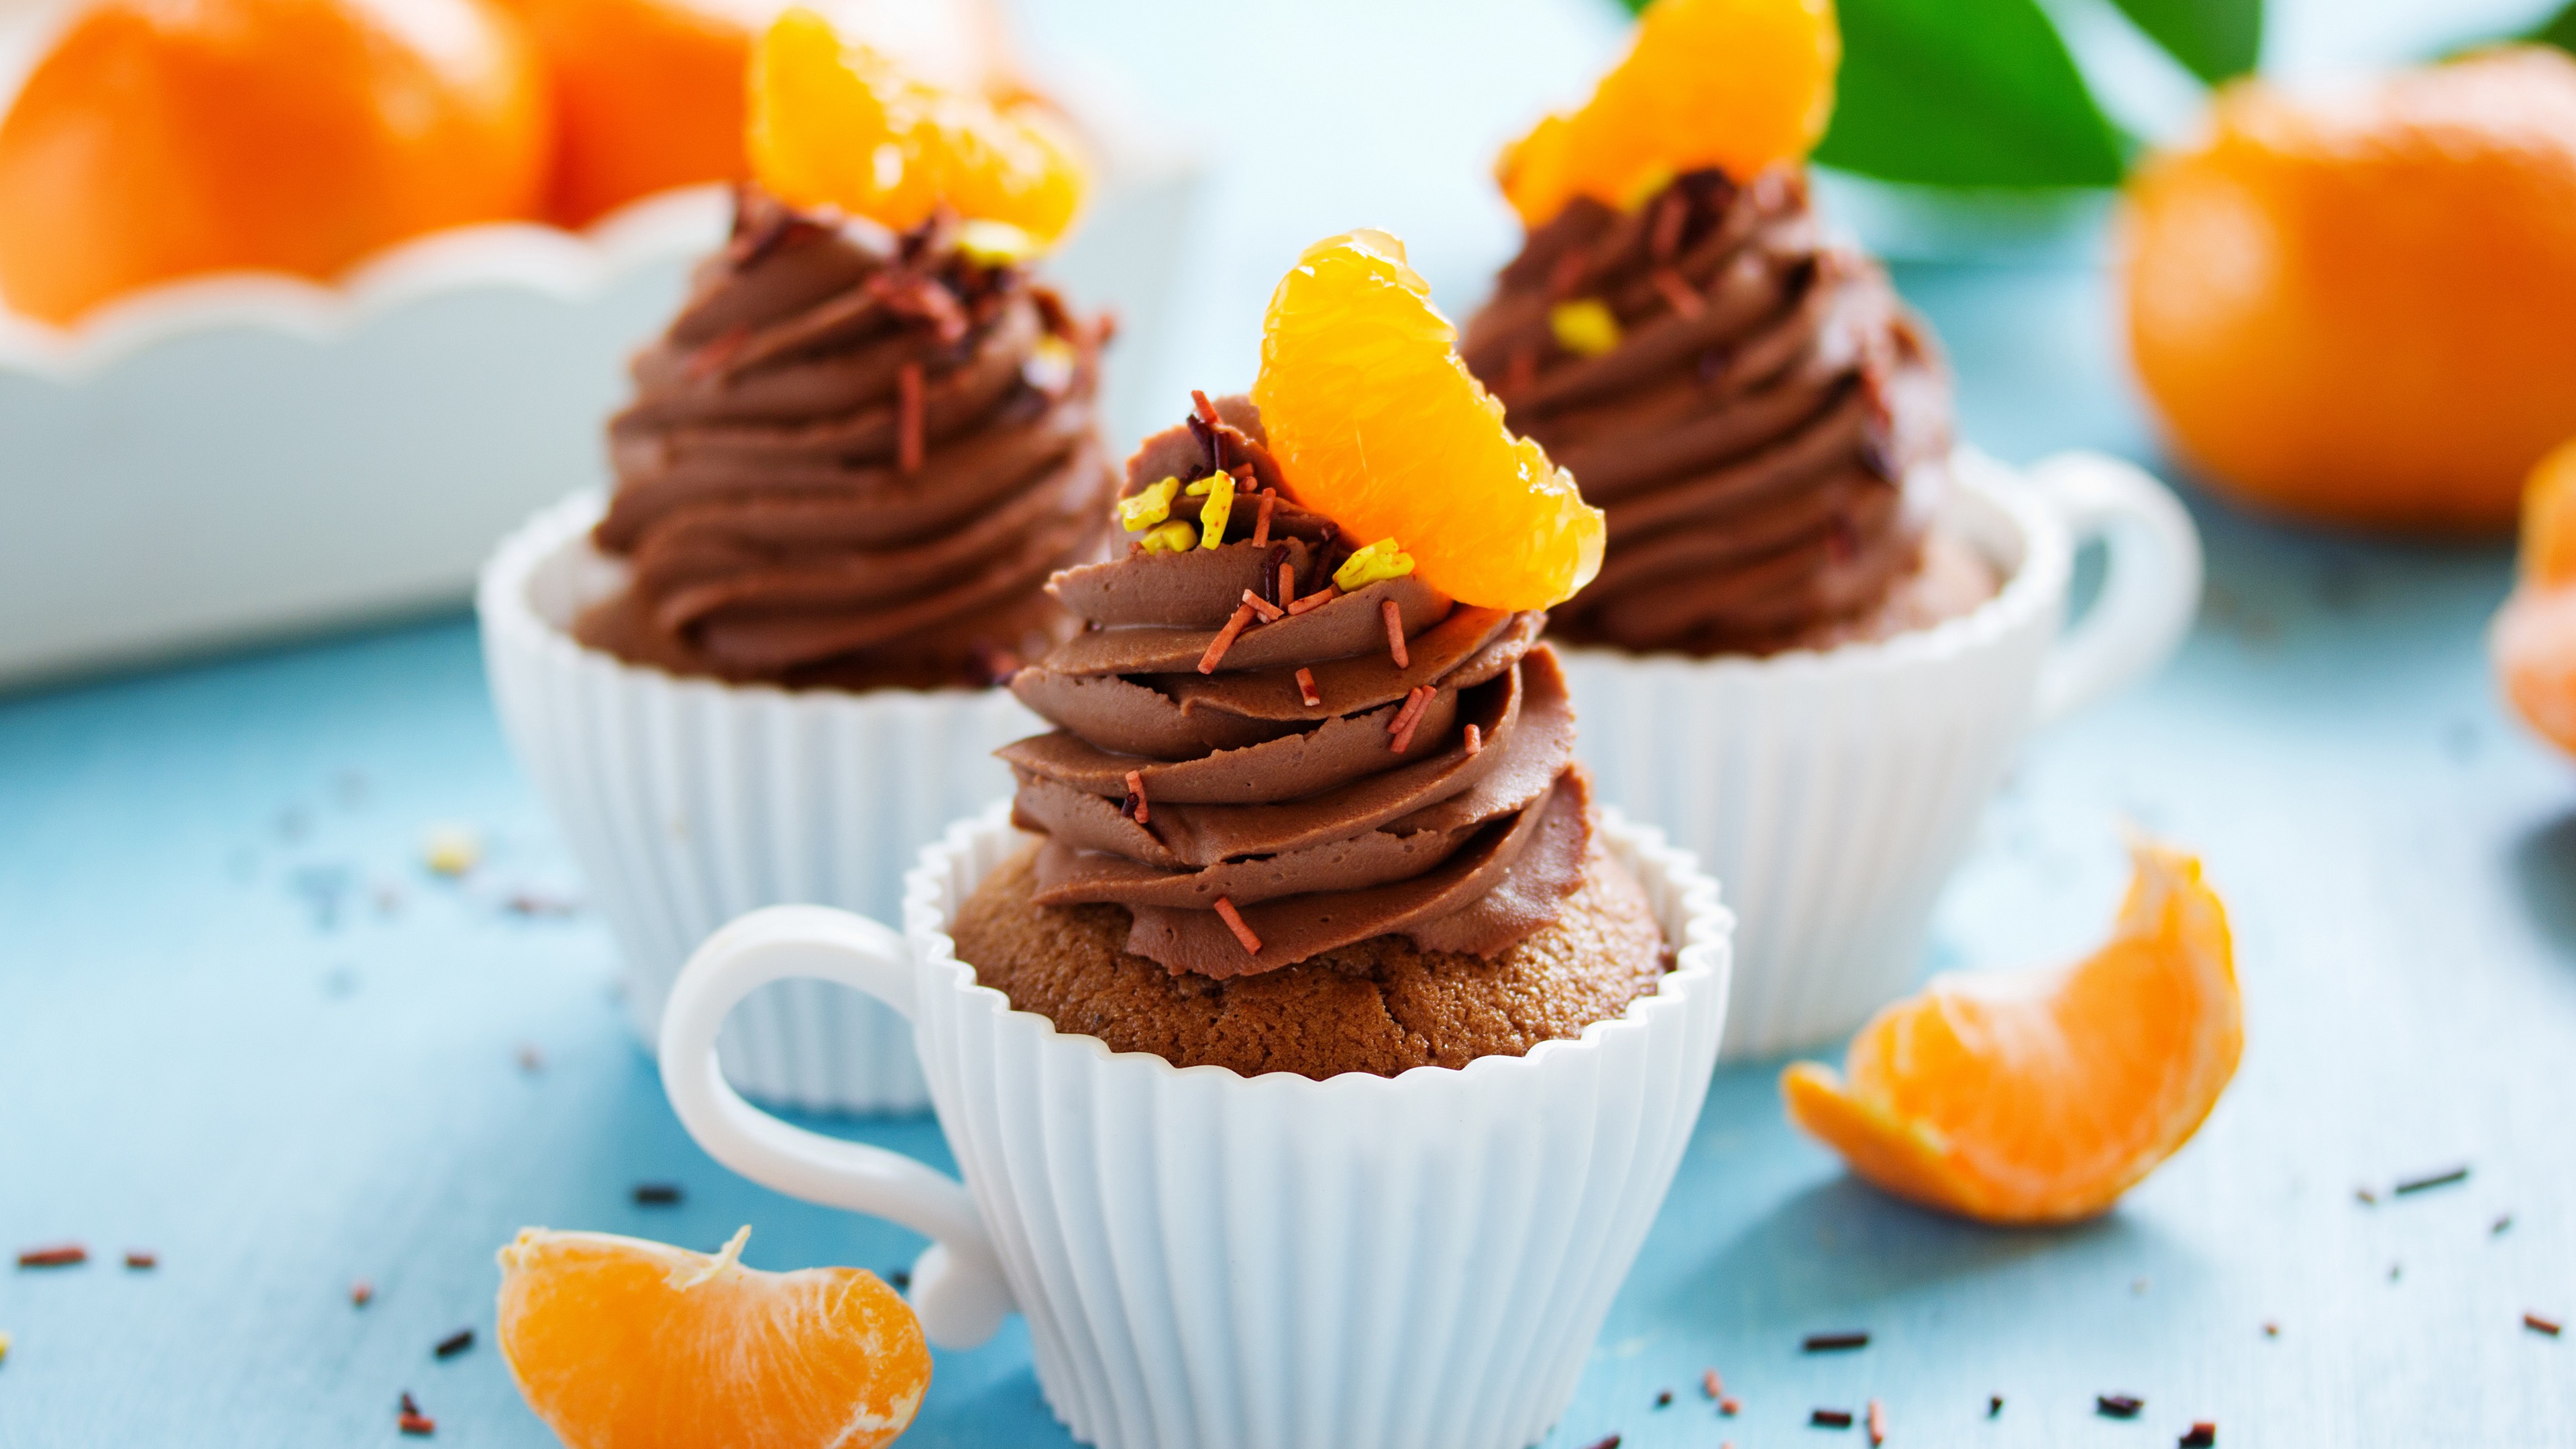 еда торт апельсины шоколад food cake oranges chocolate скачать